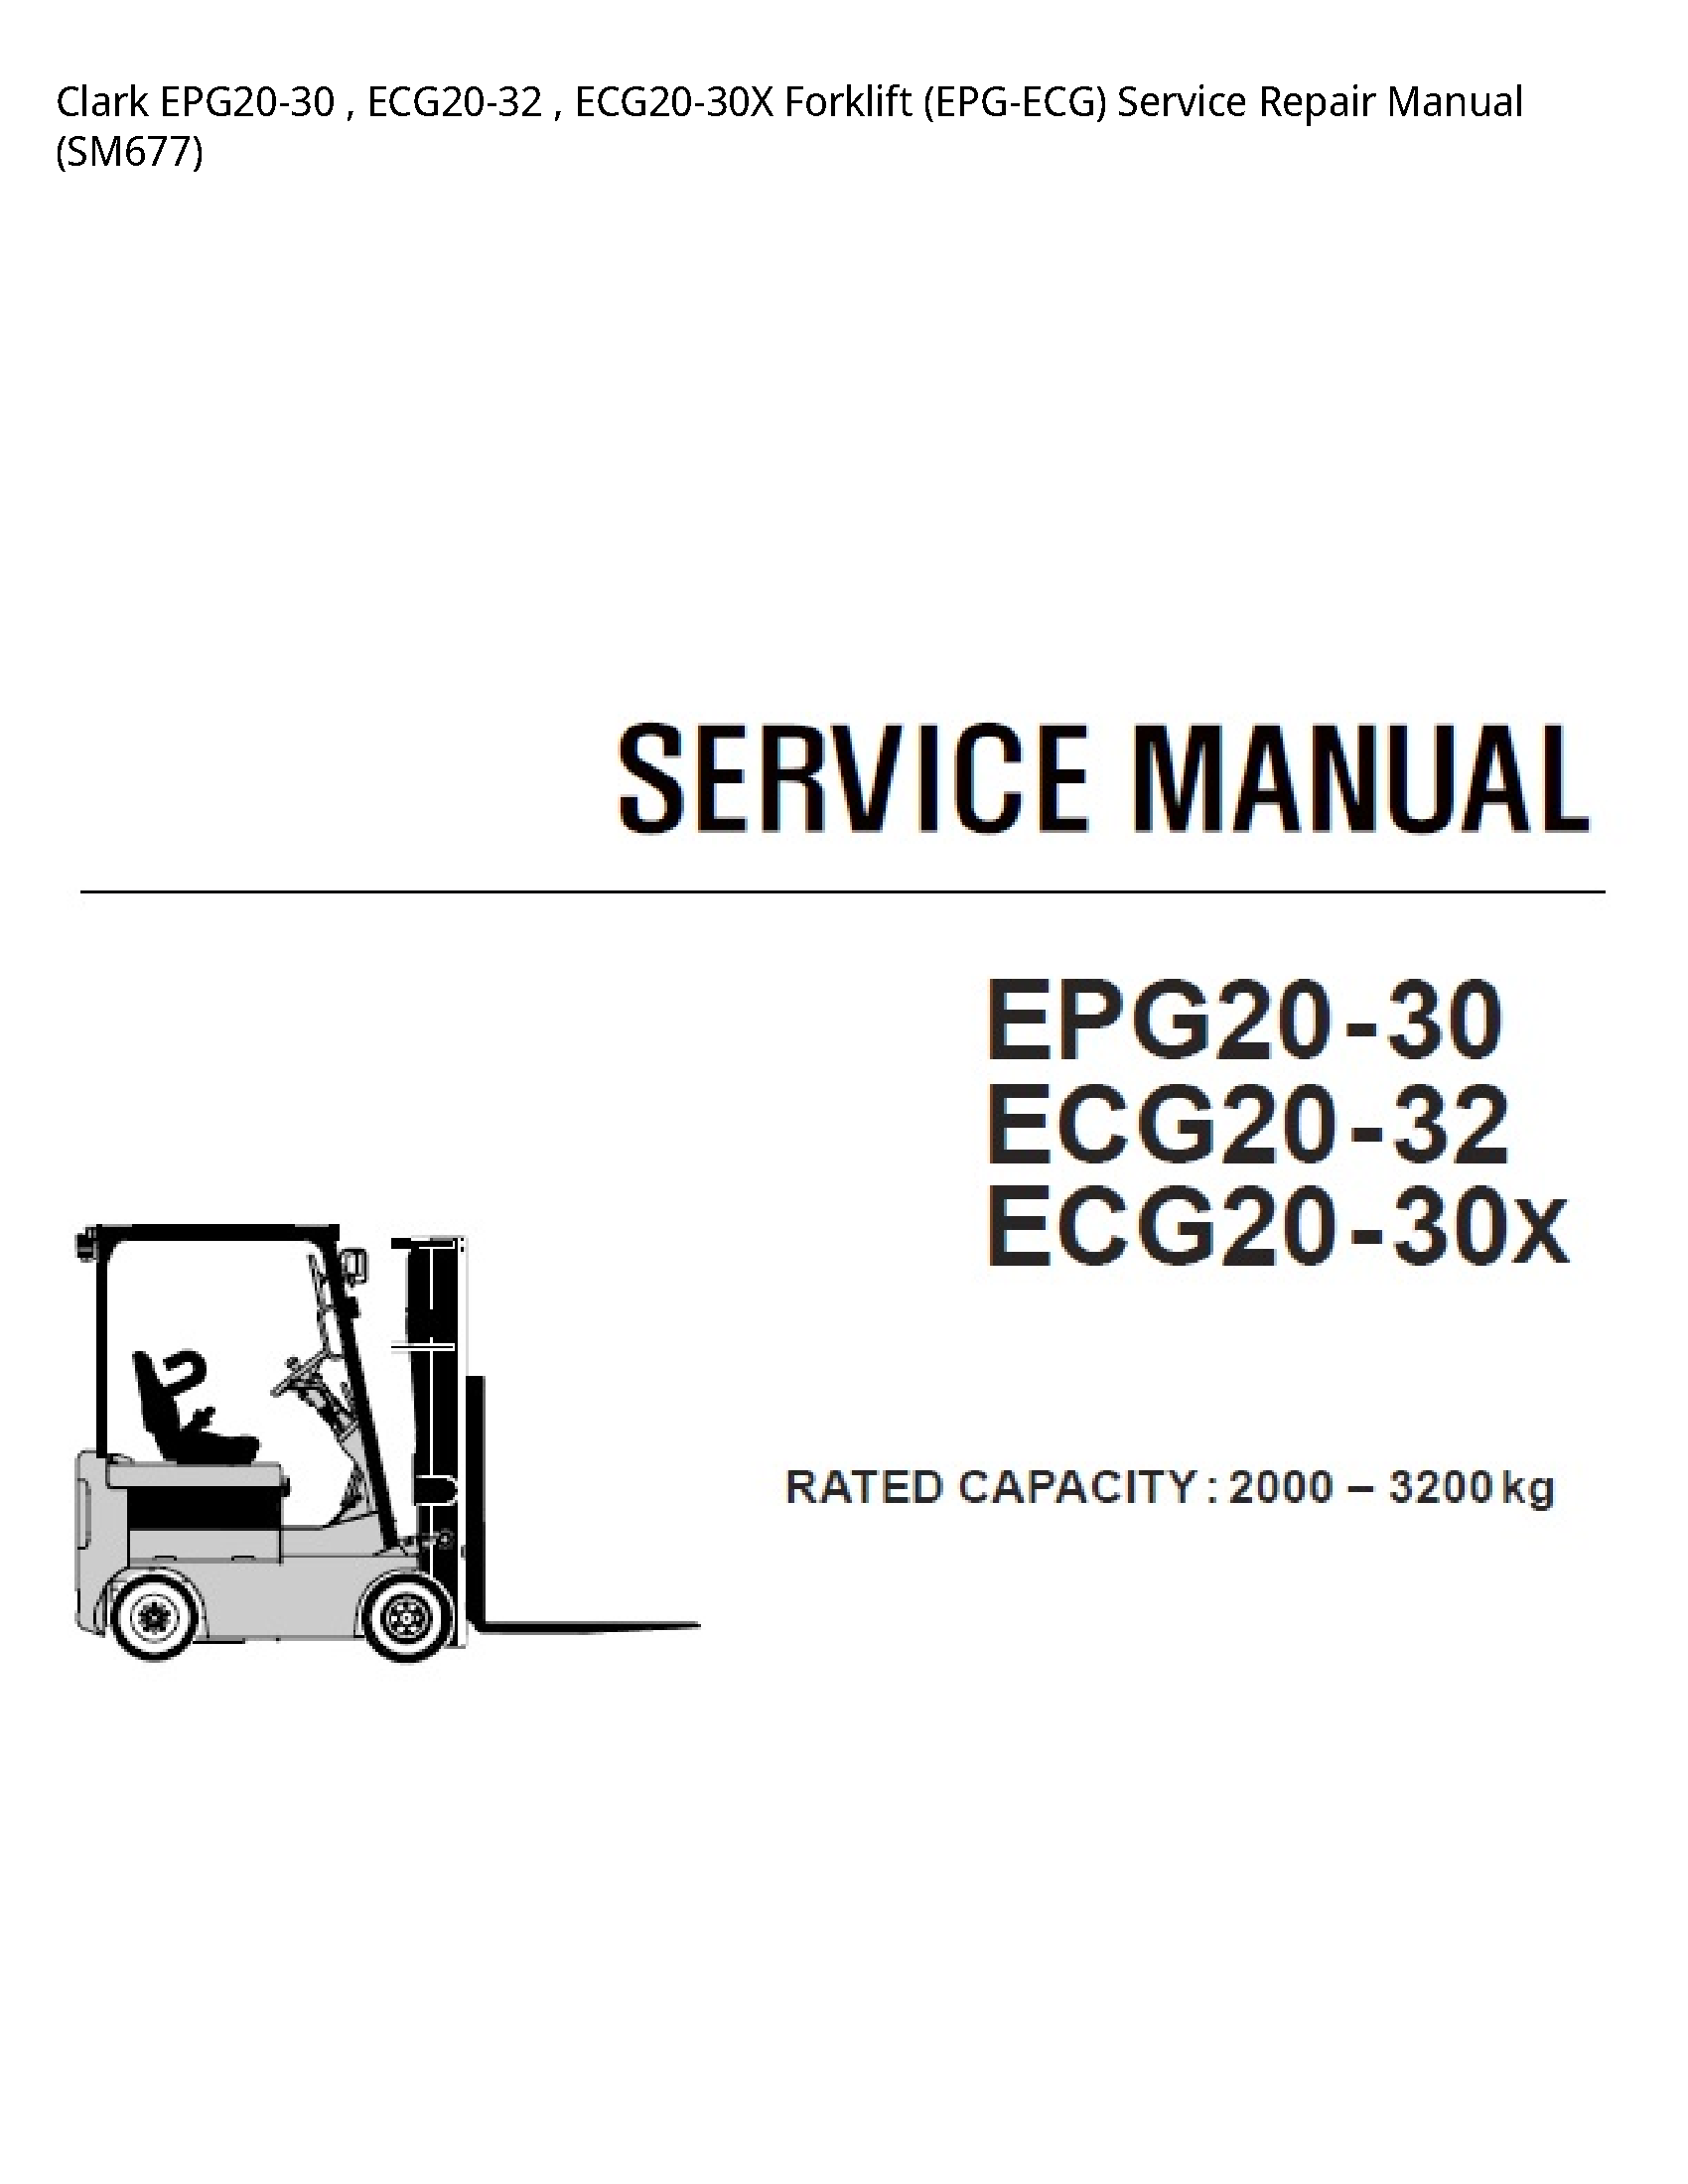 Clark EPG20-30 Forklift (EPG-ECG) manual